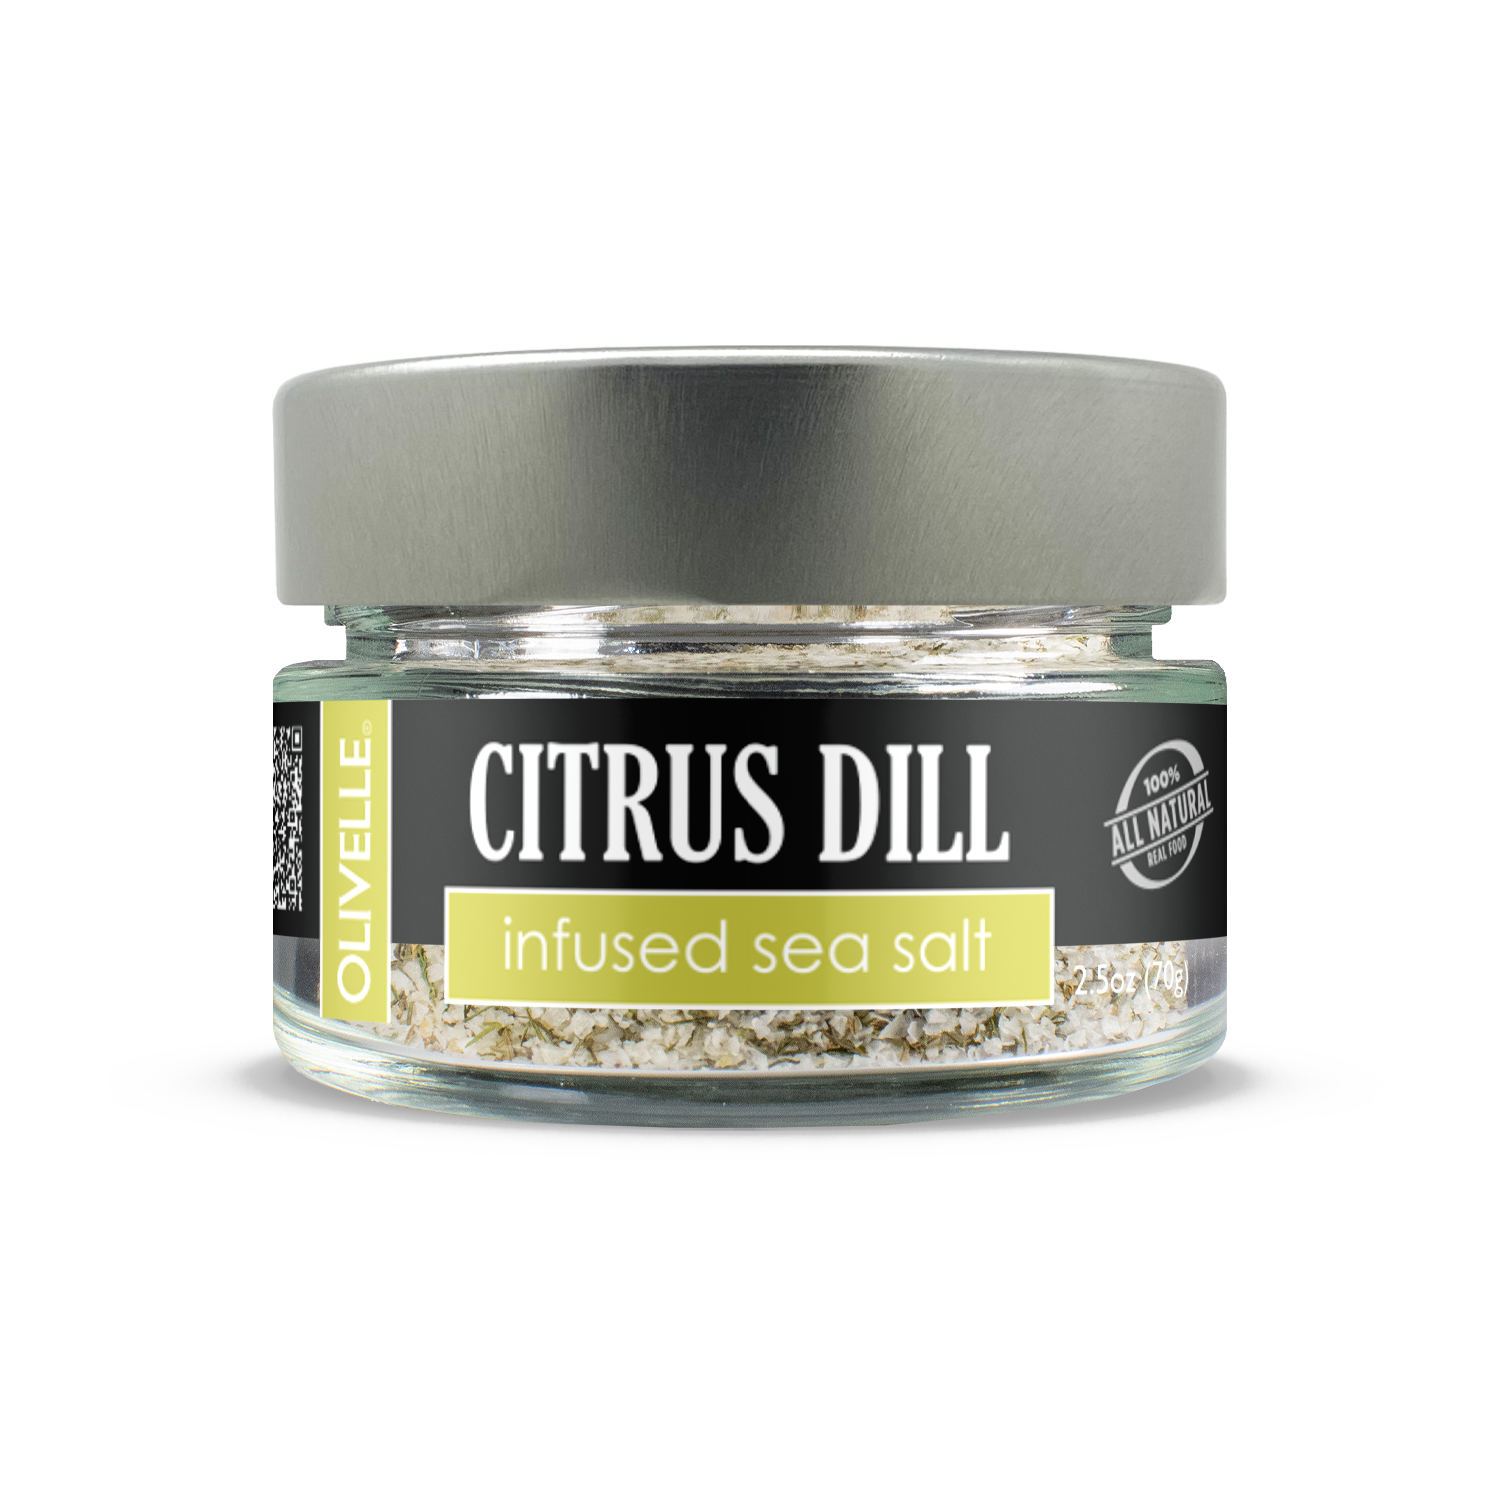 Citrus Dill Infused Sea Salt